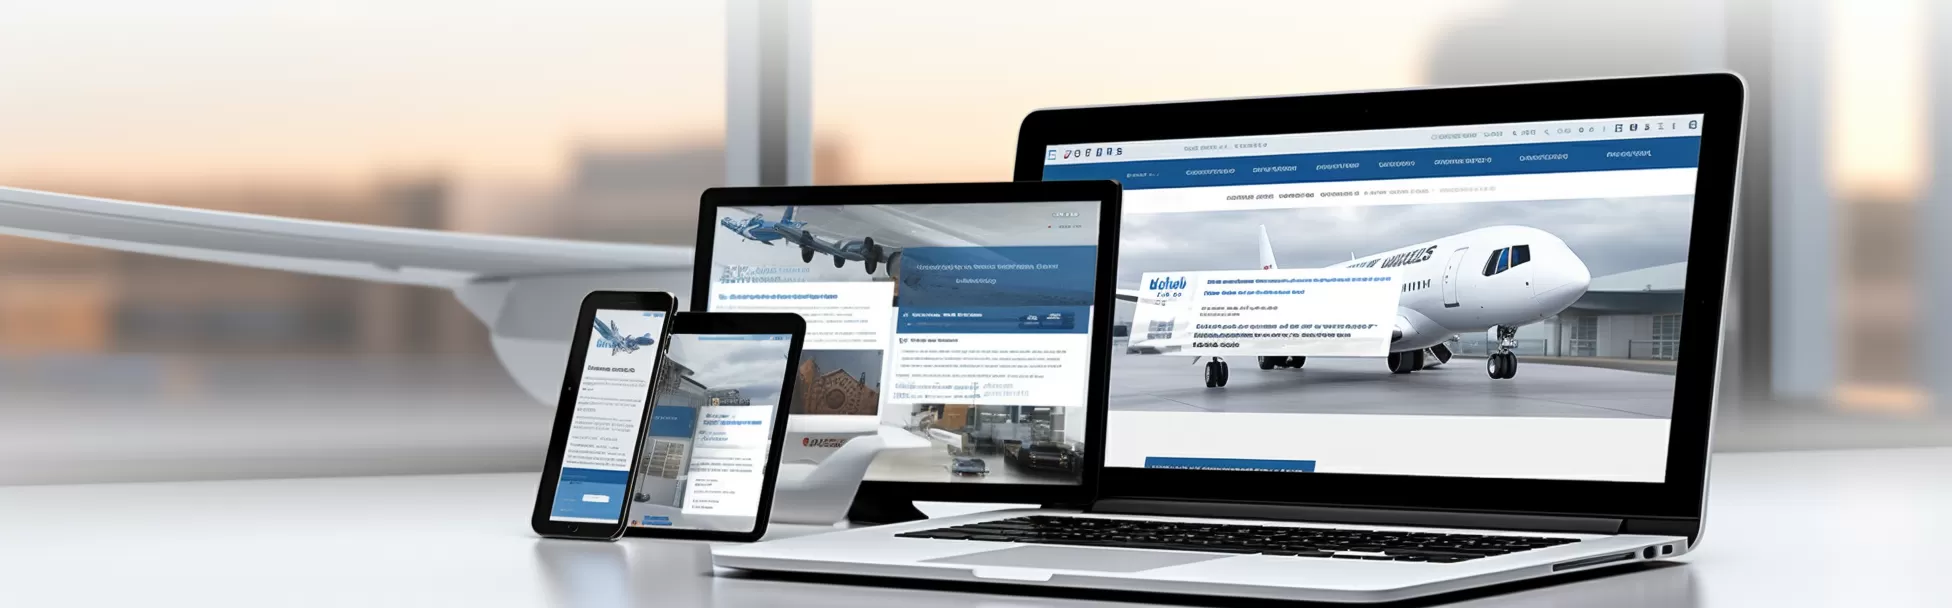 Havaalanı Transfer Web Sitesi Tasarımı